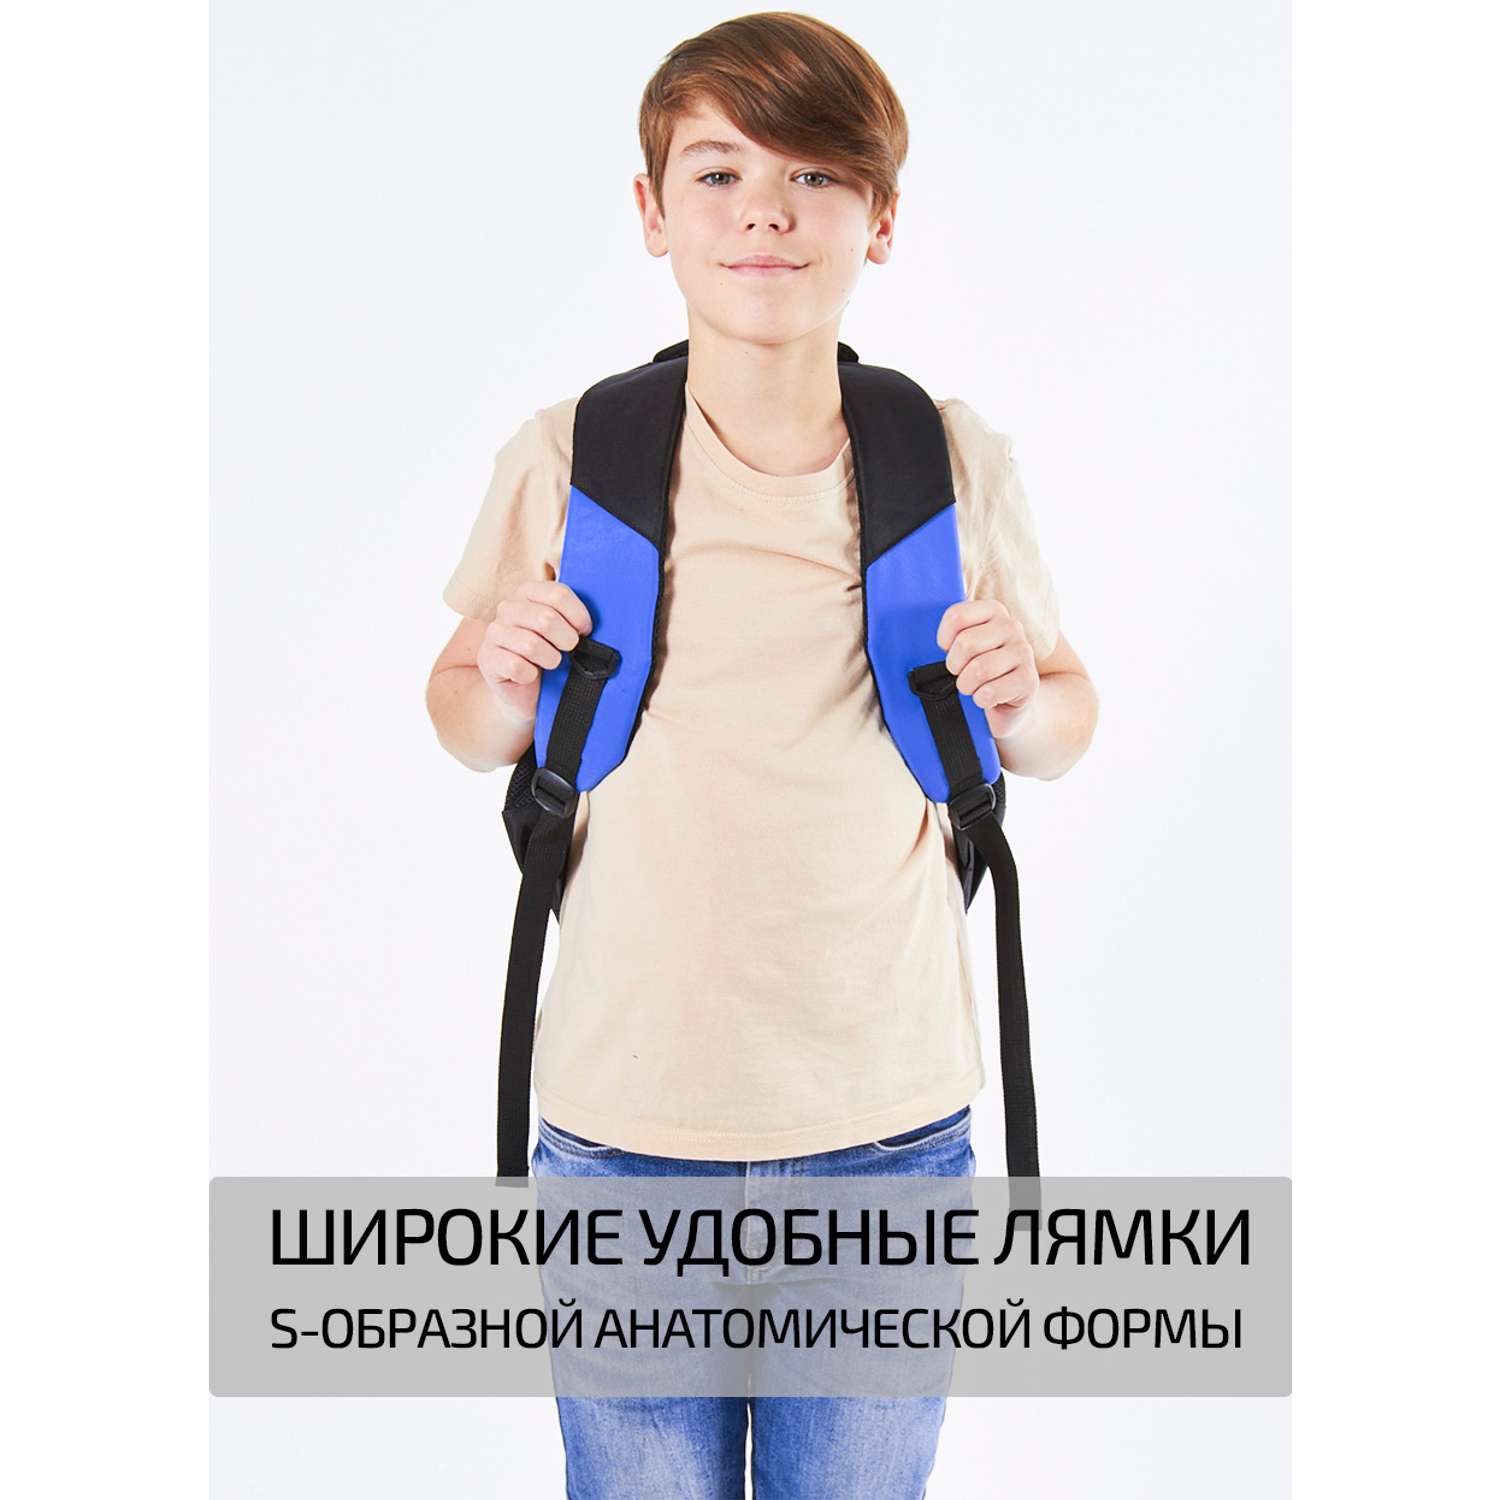 Рюкзак школьный Evoline средний черно-голубой EVO-158-1 - фото 8